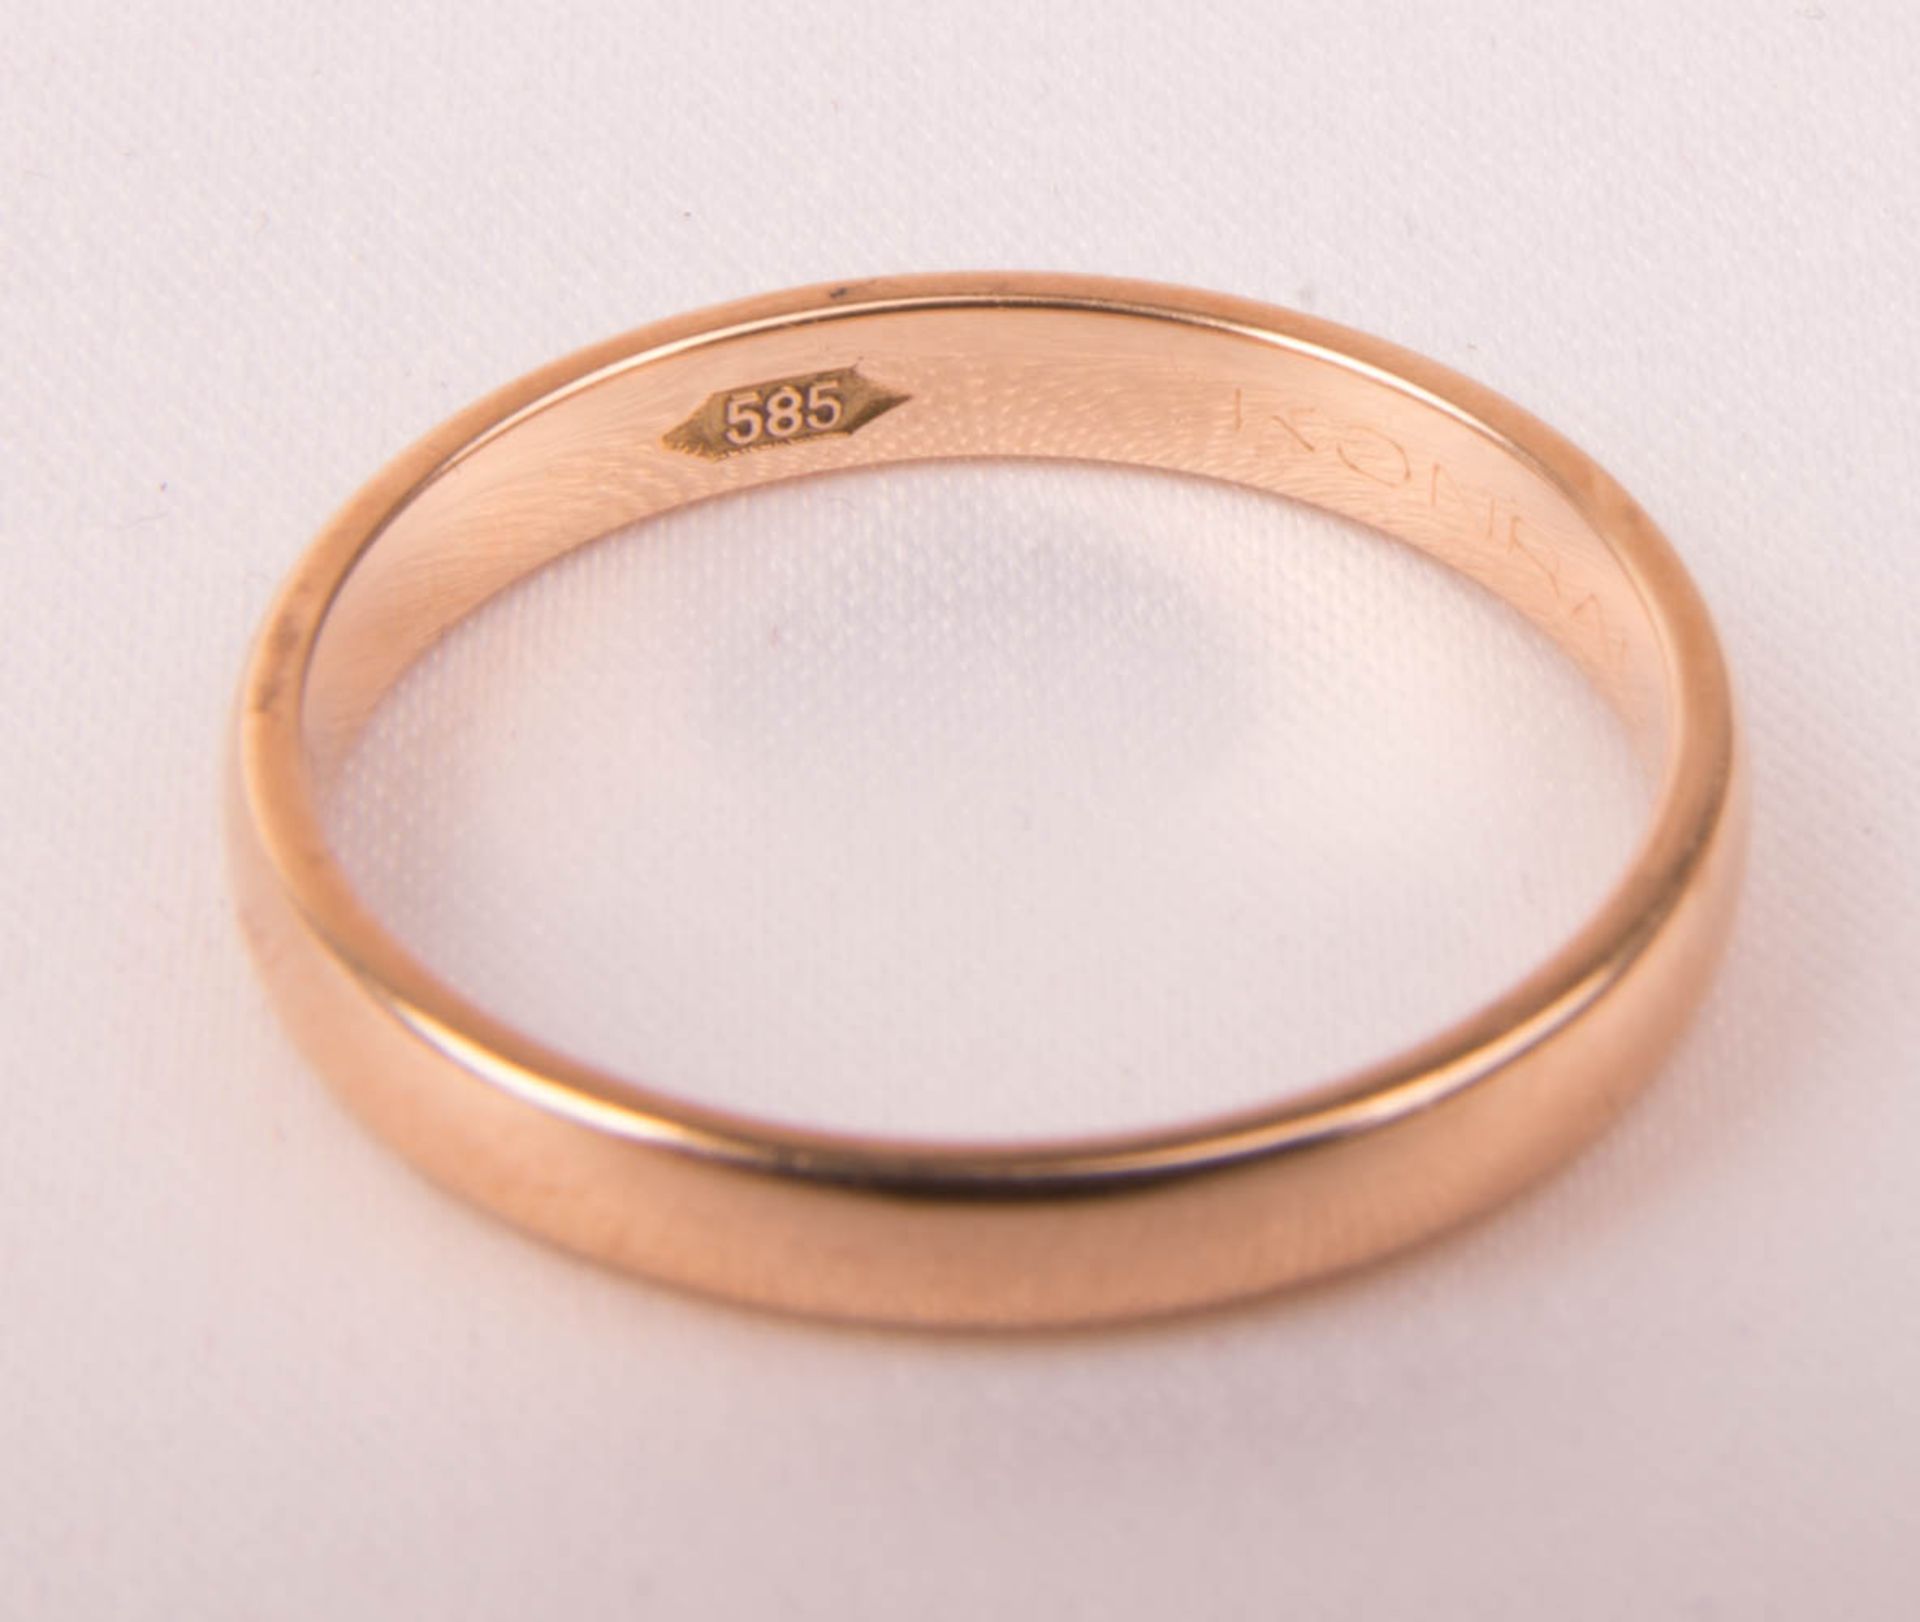 Armkette mit Herzchen und feinem Ring, 585er Rosé- und Gelbgold. - Bild 5 aus 6